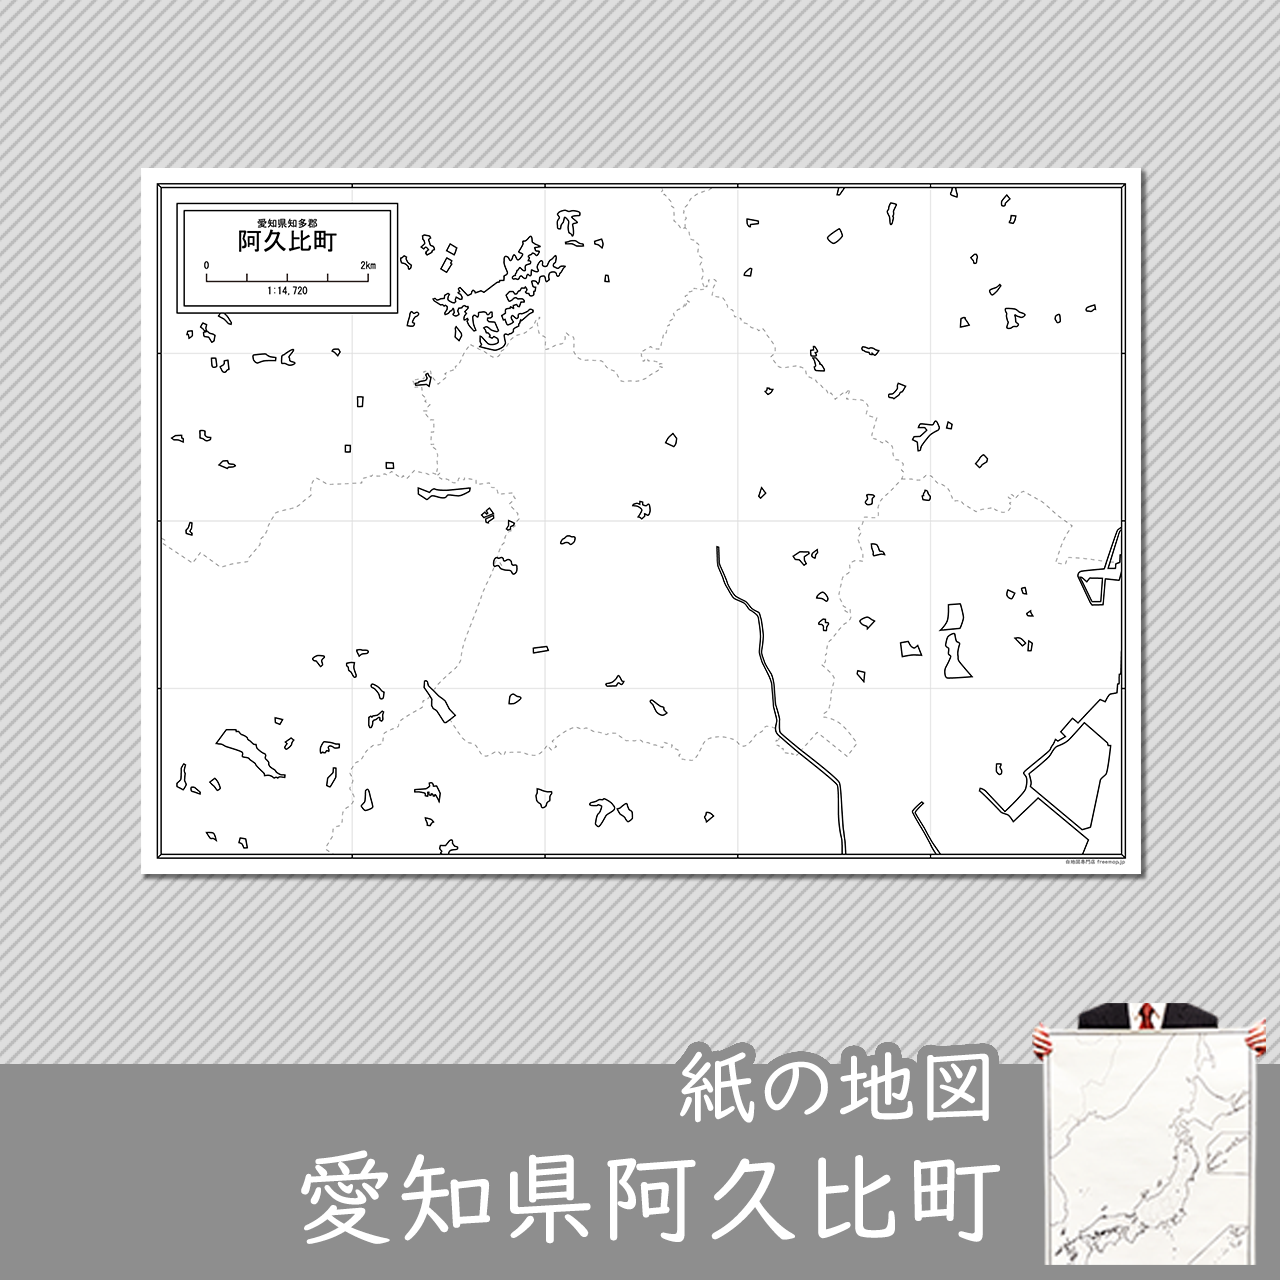 阿久比町の紙の白地図のサムネイル